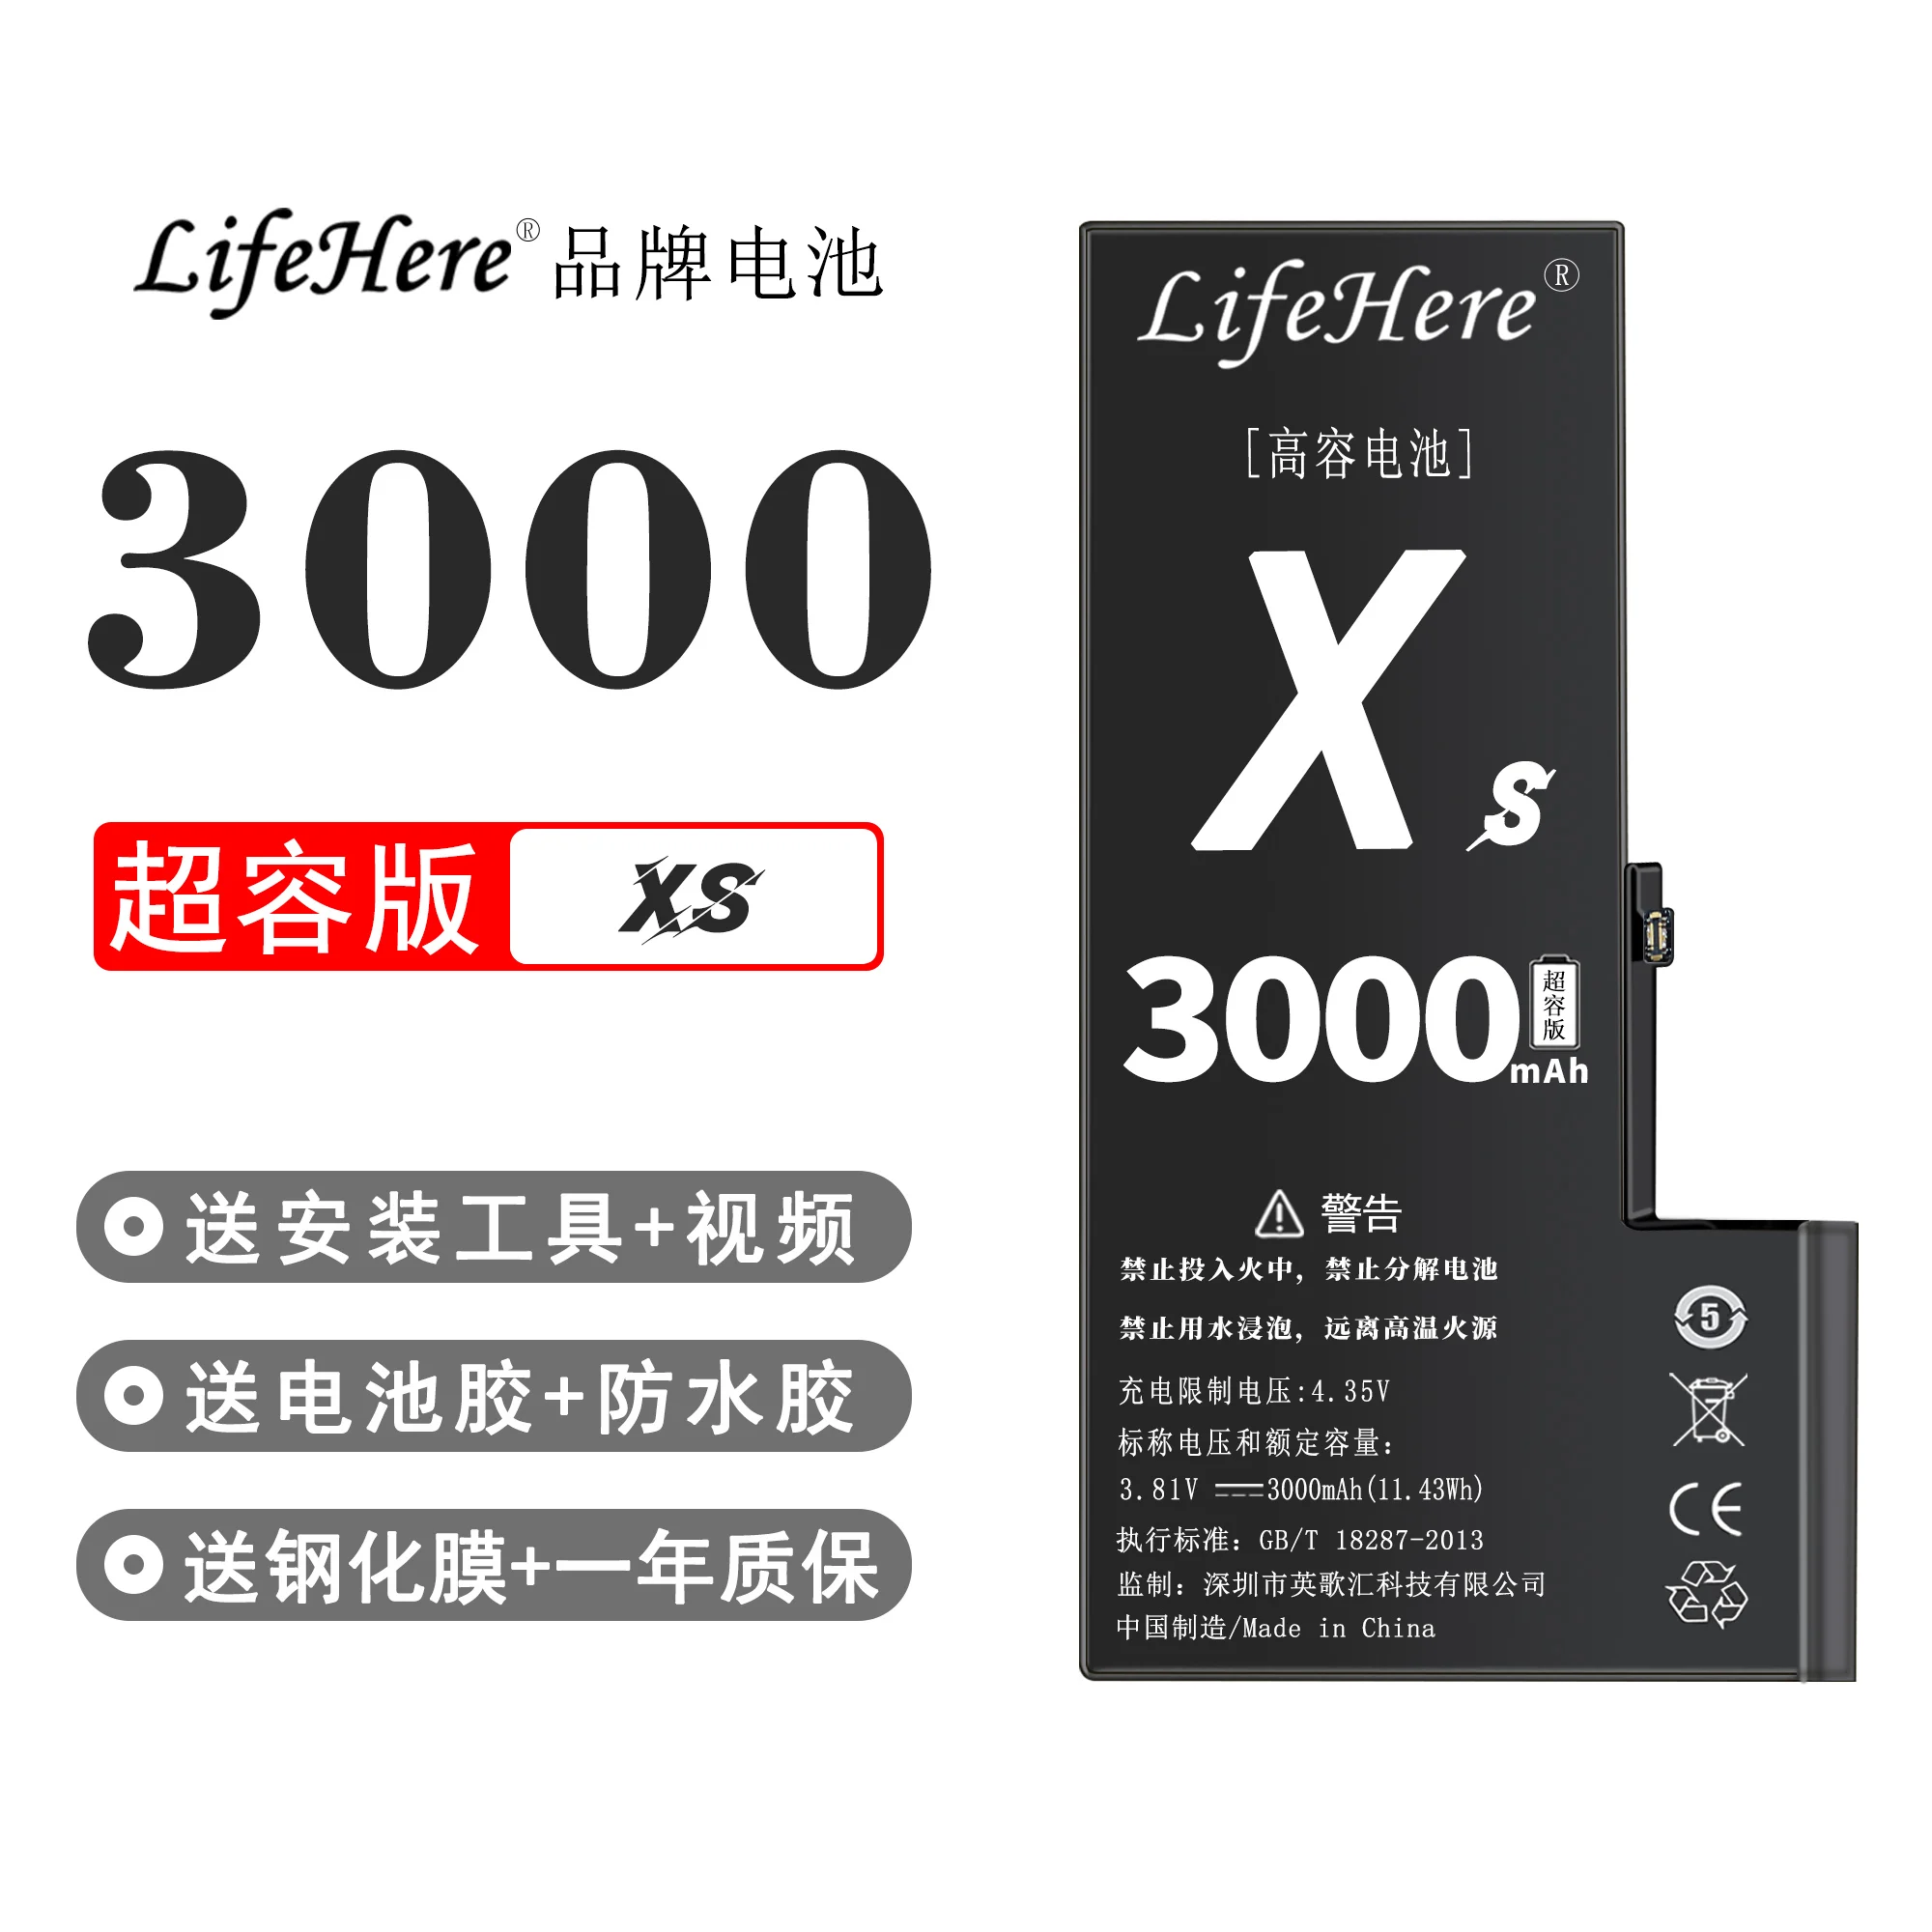 מקורי Lifehere 3000Mah סוללה עבור iPhone של אפל XS A2097 A1920 A2098 חלק תיקון קיבולת גבוהה הסוללות - 0